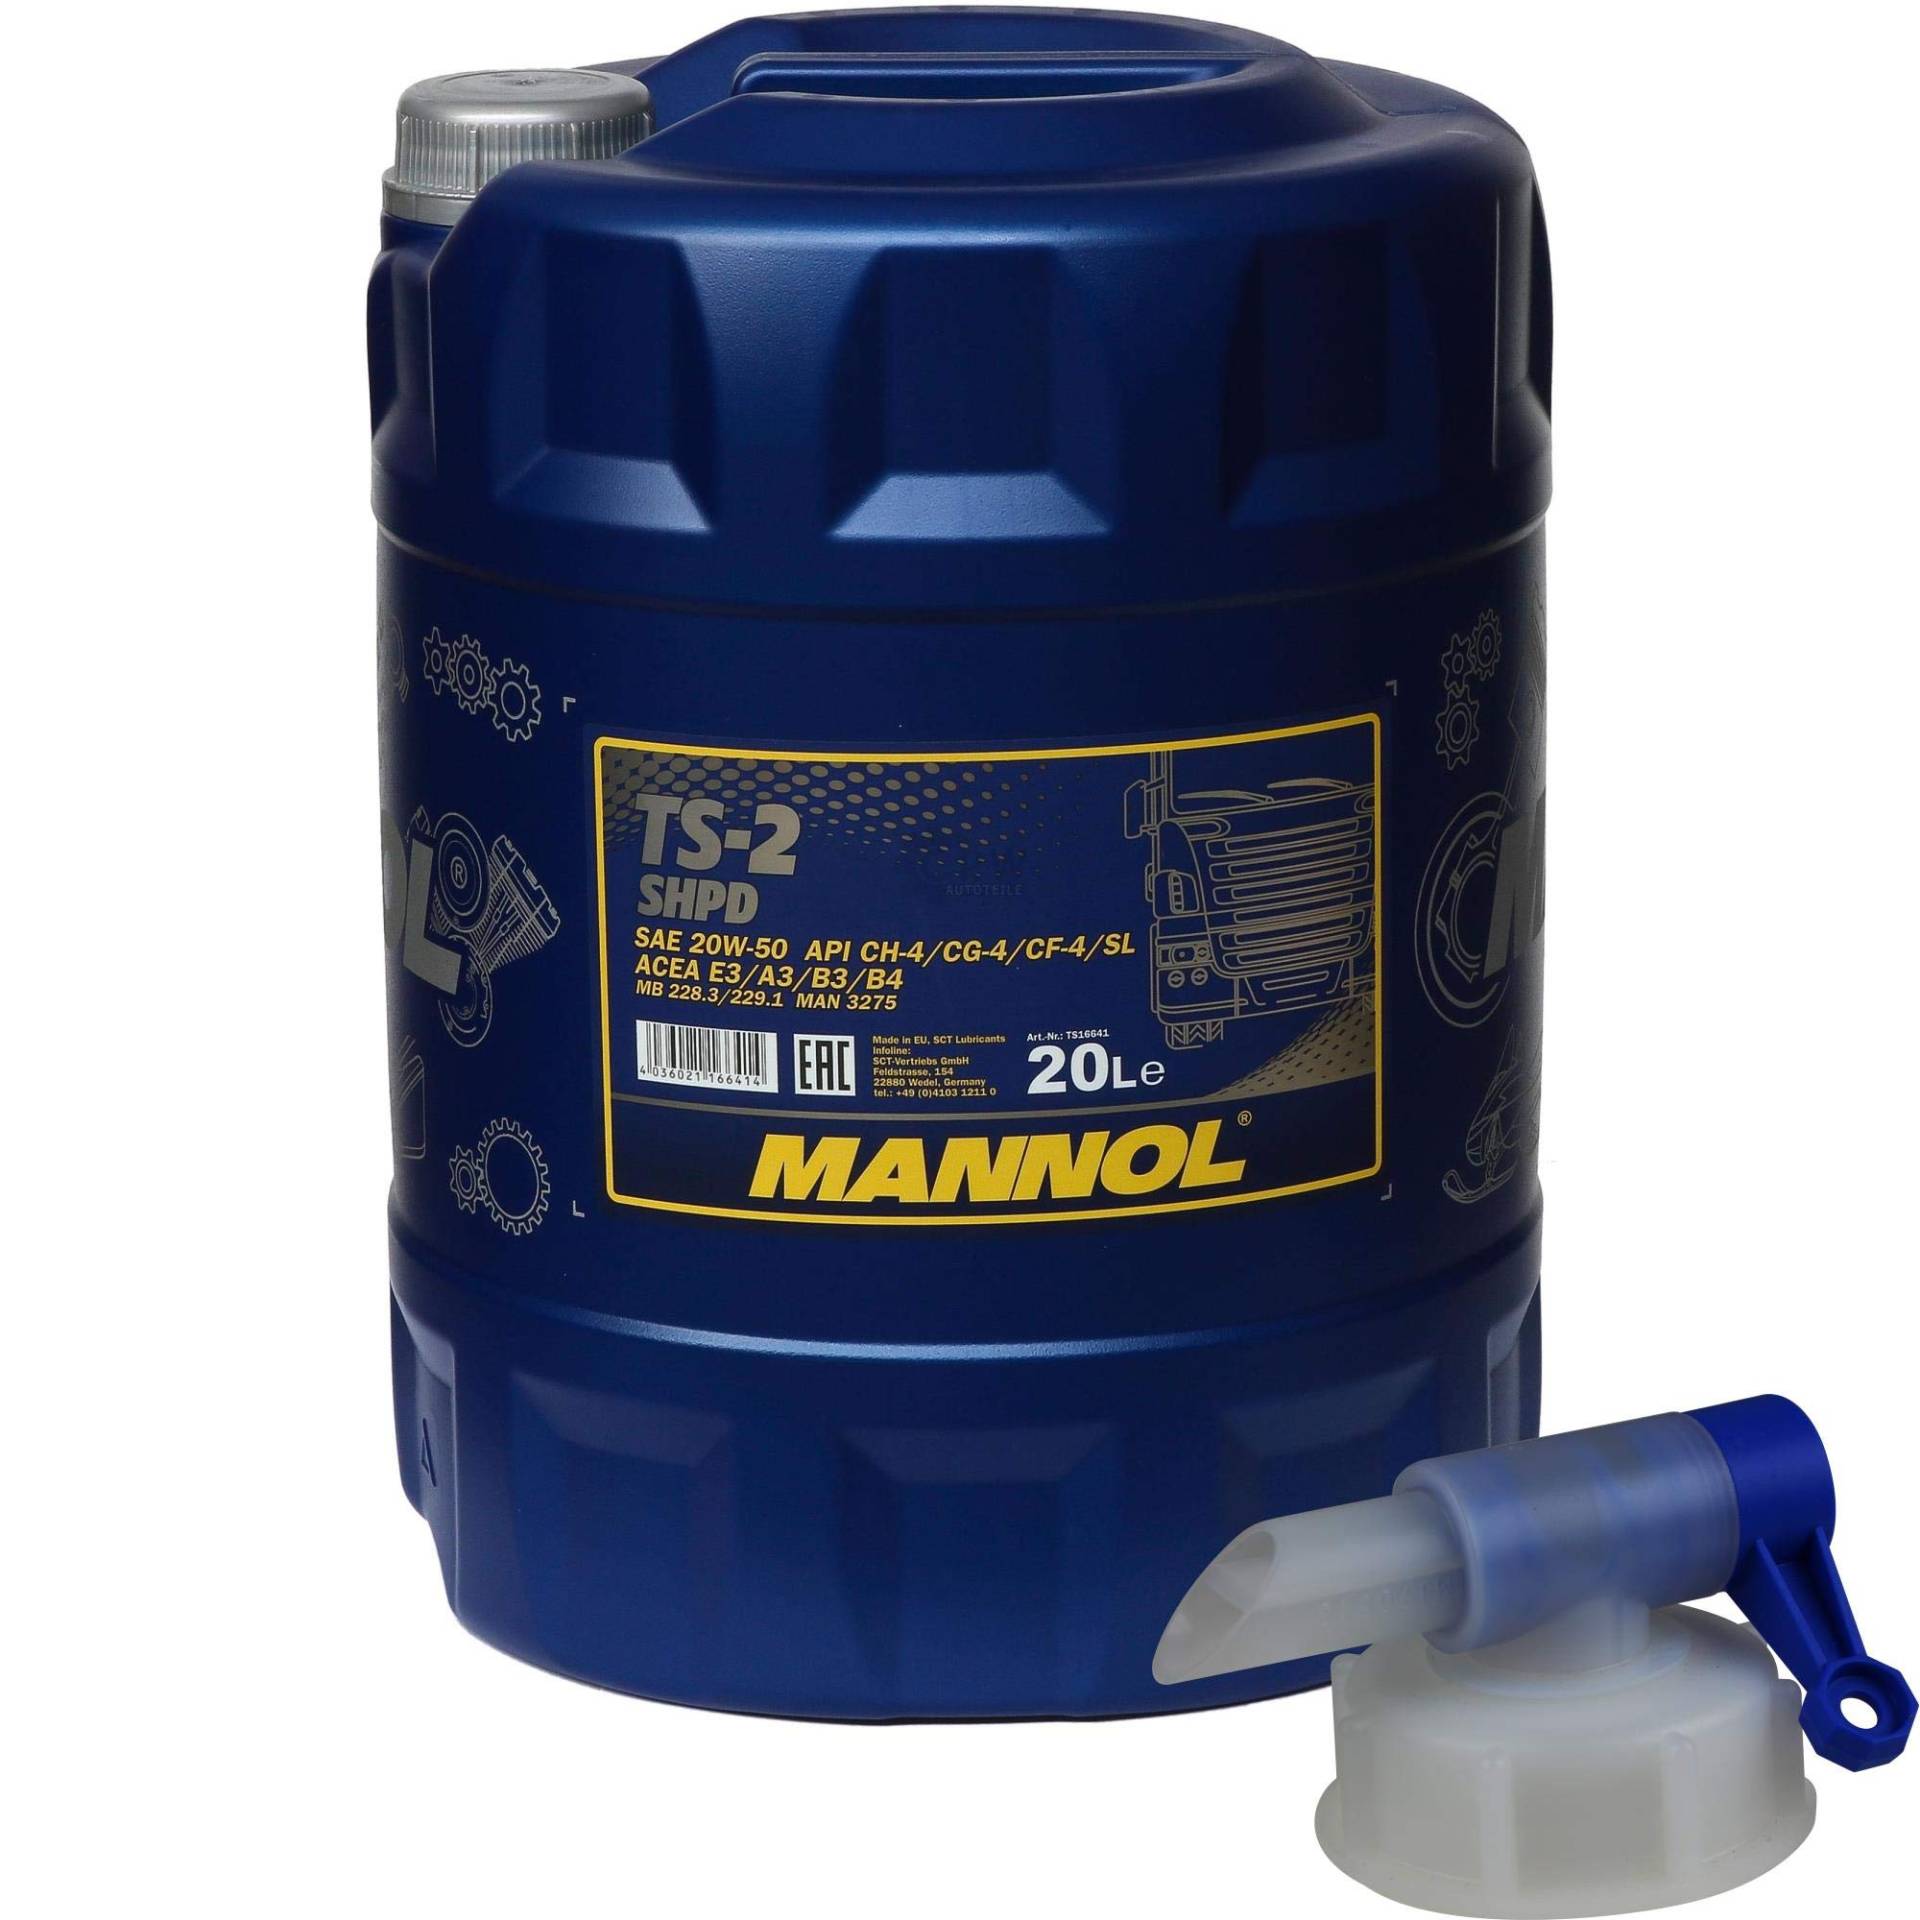 20 Liter MANNOL Motoröl TS-2 SHPD 20W-50 API CH-4/CG-4/CF-4/SL inkl. Auslaufhahn von Diederichs